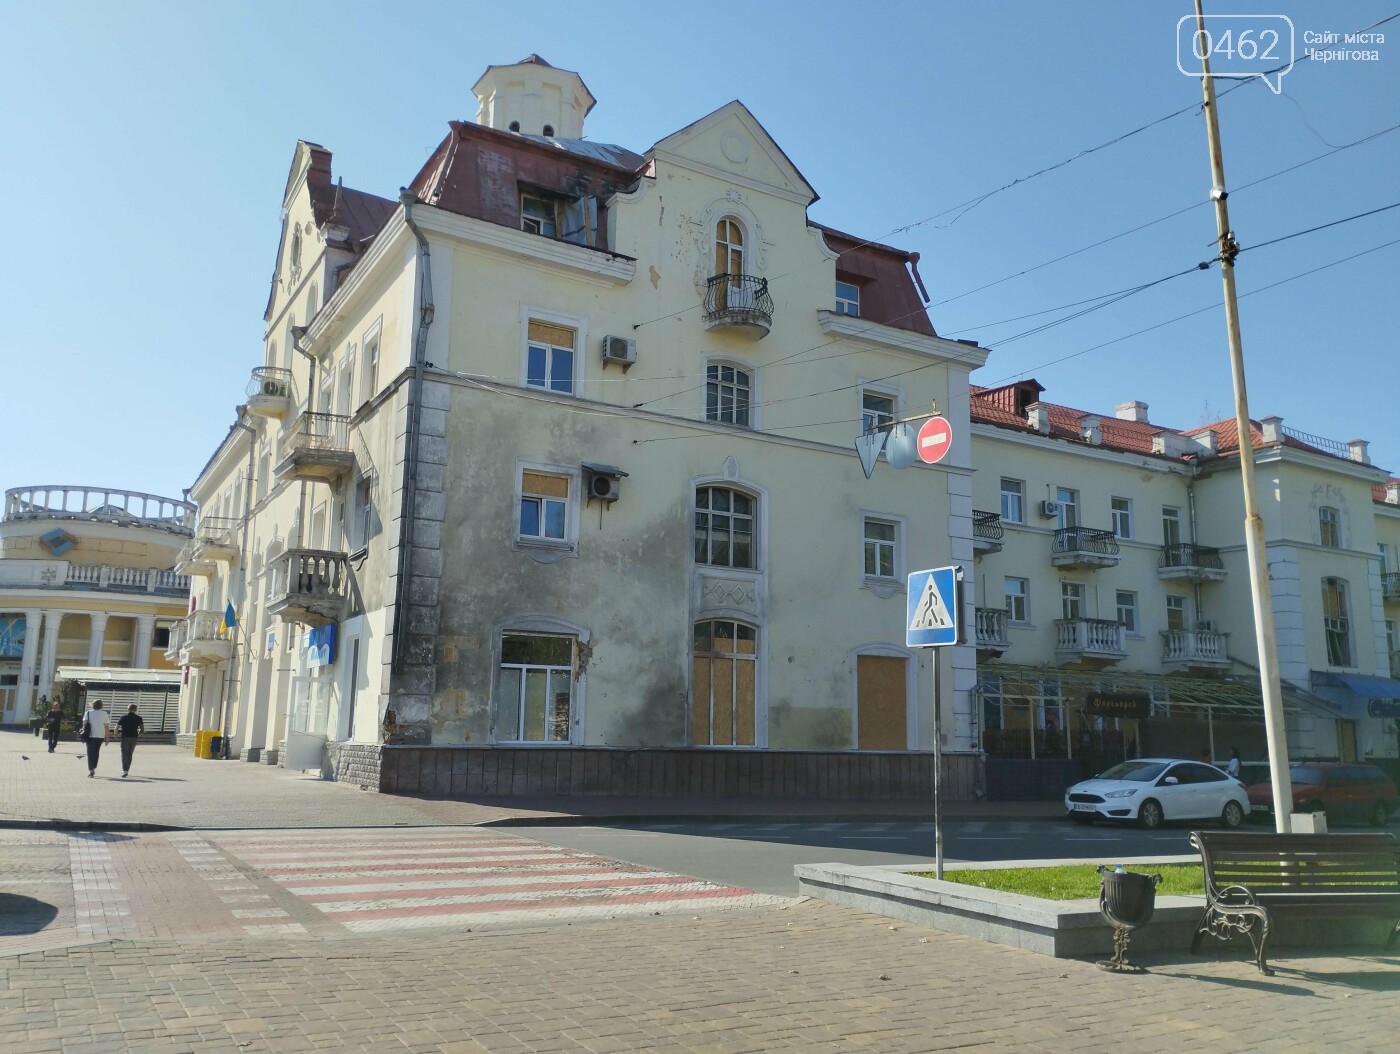 Будівля Господарського суду зазнала значних пошкоджень внаслідок російського обстрілу